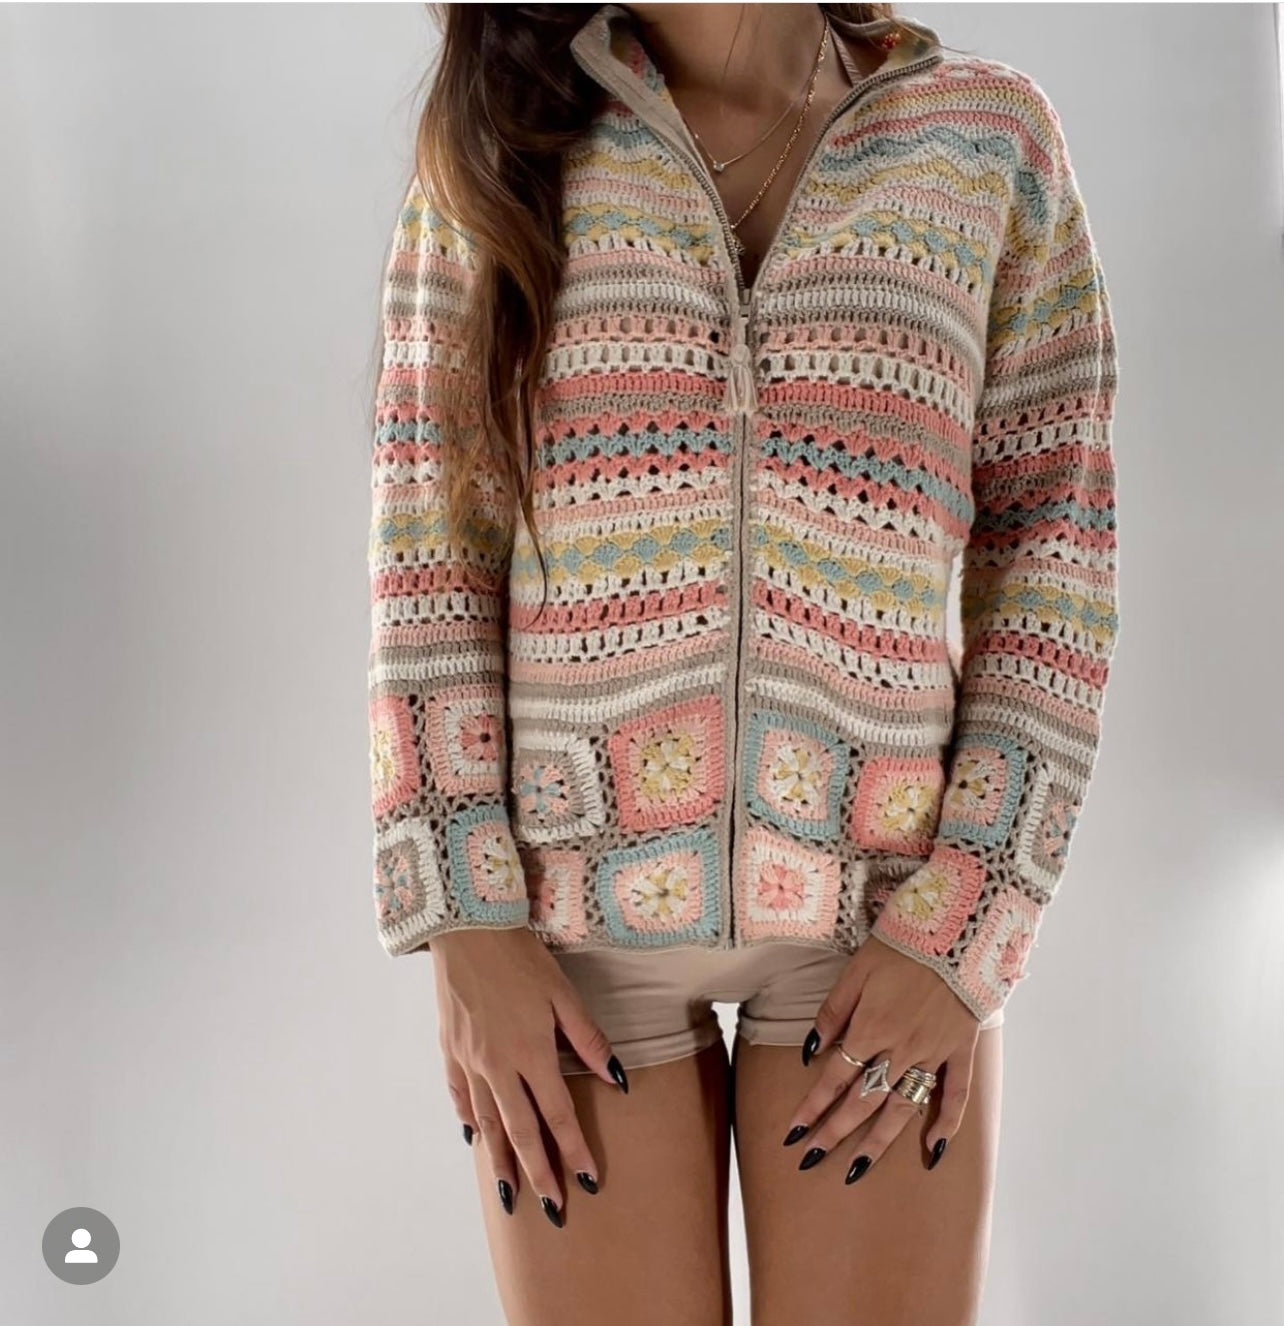 Granny Square Sweater (S/M)